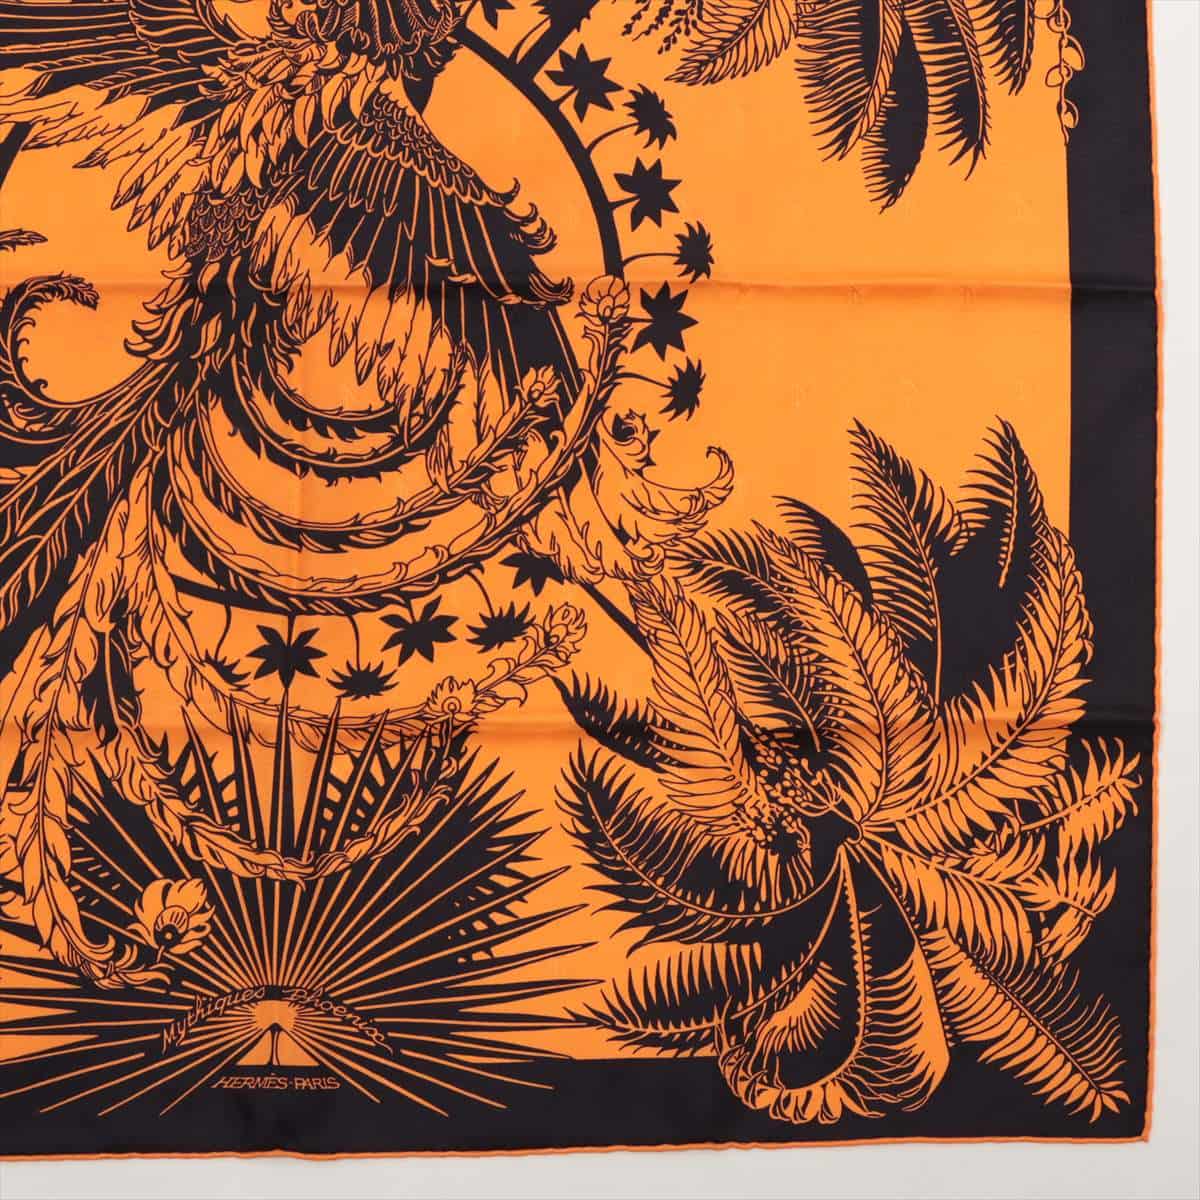 エルメス カレ70 Mythiques phoenix 不死鳥の神話 スカーフ シルク オレンジ